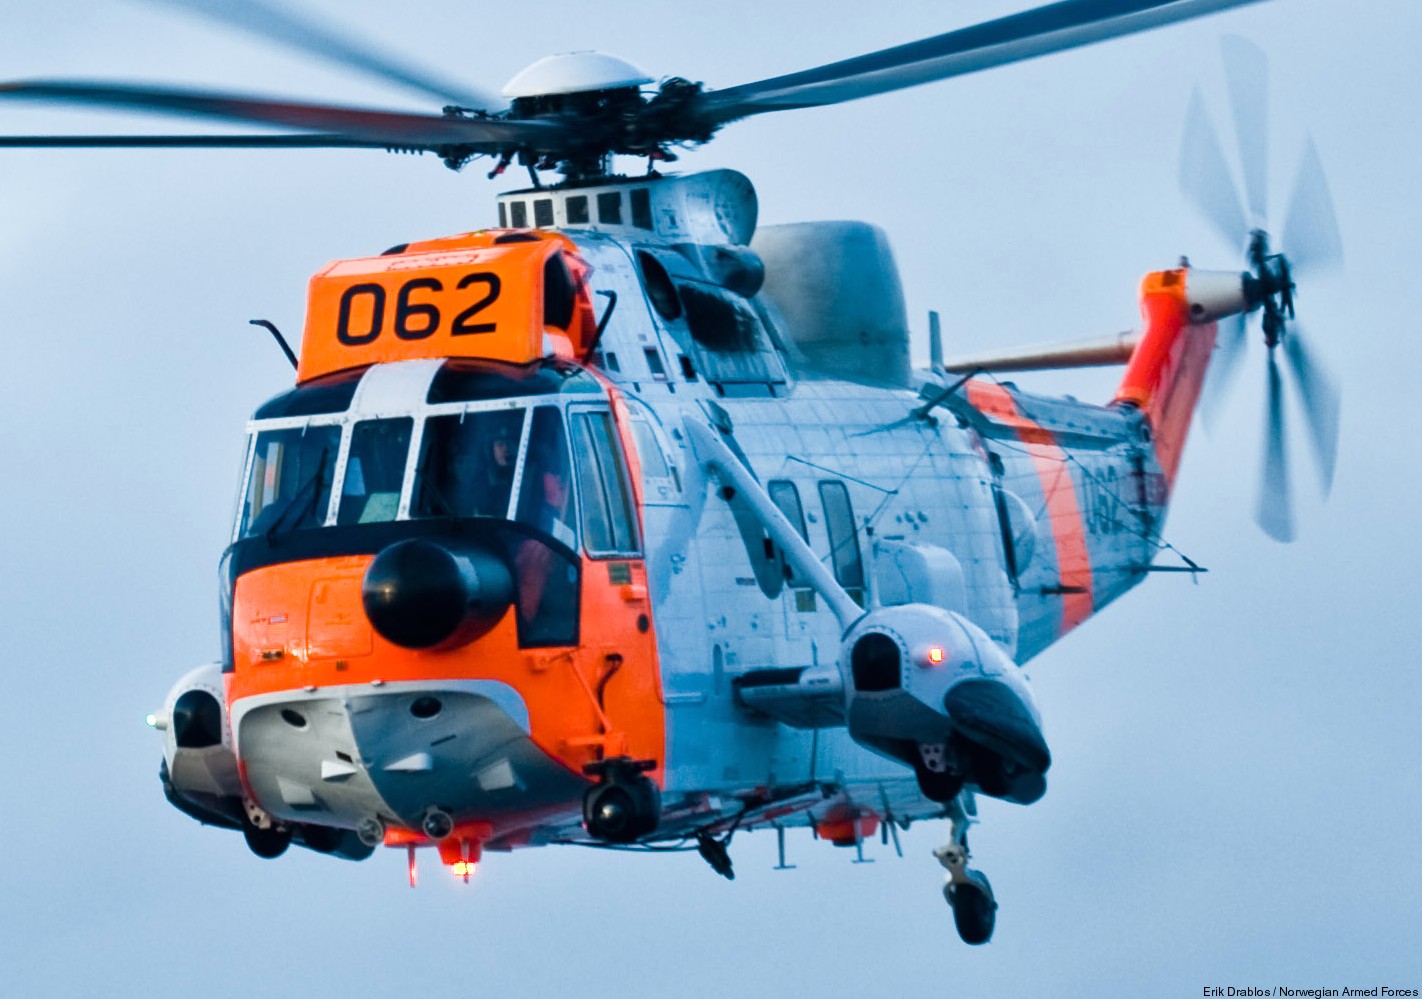 westland ws-61 sea king royal norwegian air force sar rescue 330 squadron skvadron luftforsvaret 062 09